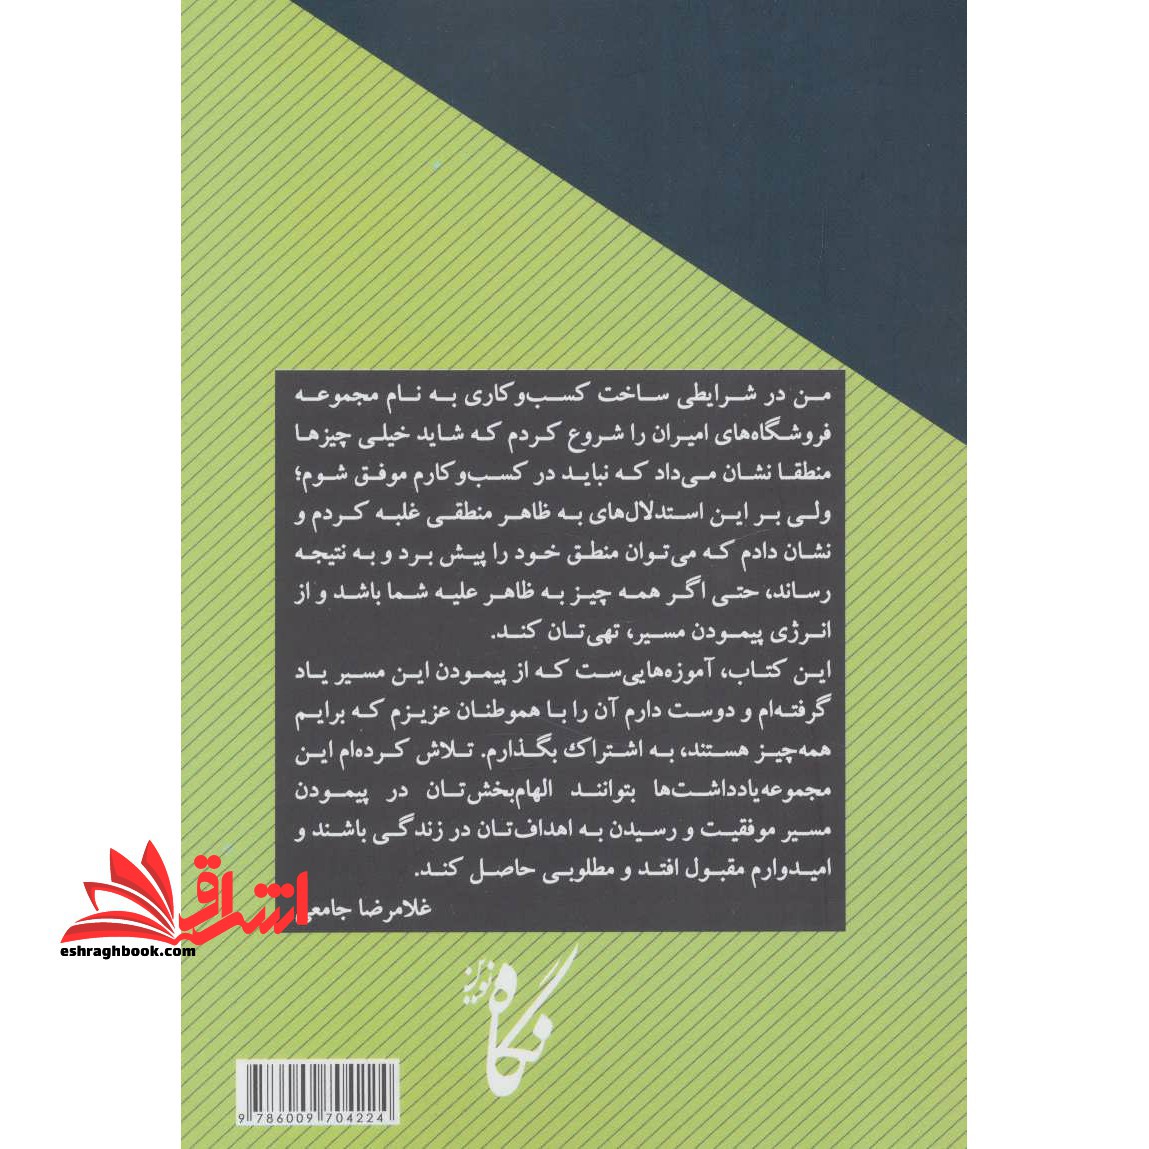 کتاب رازهای موفقیت یک کسب و کار ایرانی - یادداشت هایی کارآفرینانه برای موفقیت در کار و زندگی